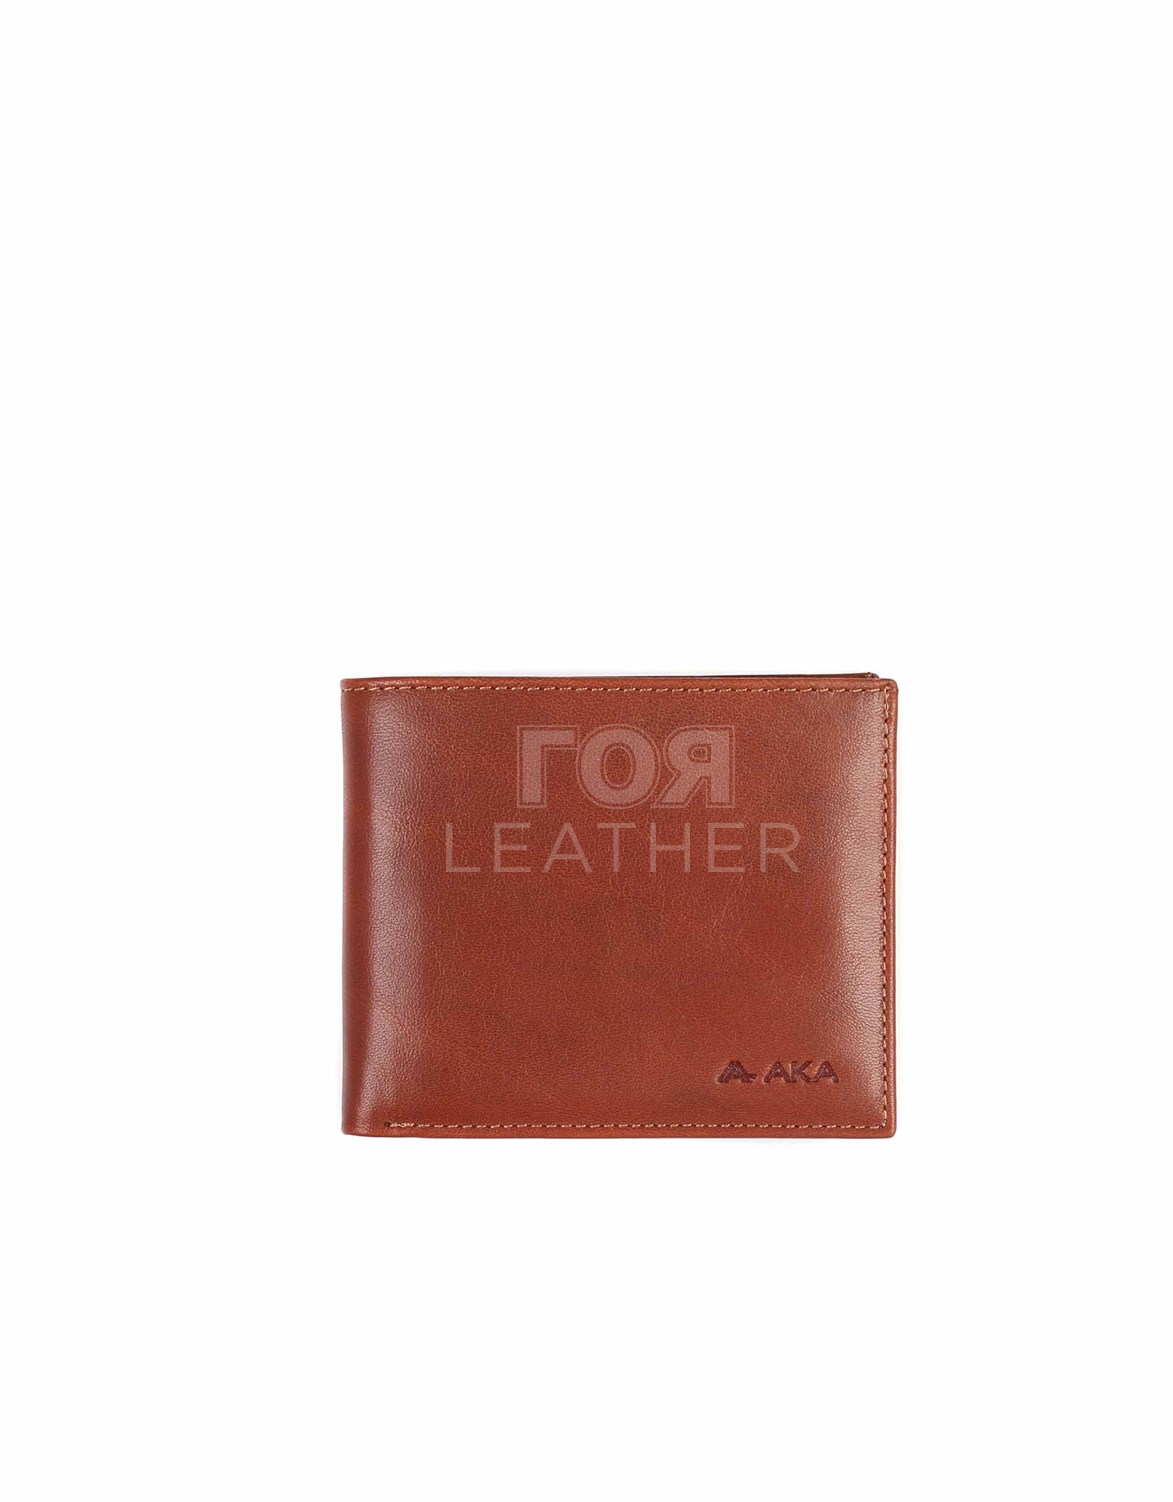 Мъжки кожен портфейл модел- 619. Продуктът е ръчно изработен от 100% естествена телешка кожа и не съдържа никакви вредни за здравето активни вещества. Нов луксозен модел мъжки портфейл от ГОЯ Leather.